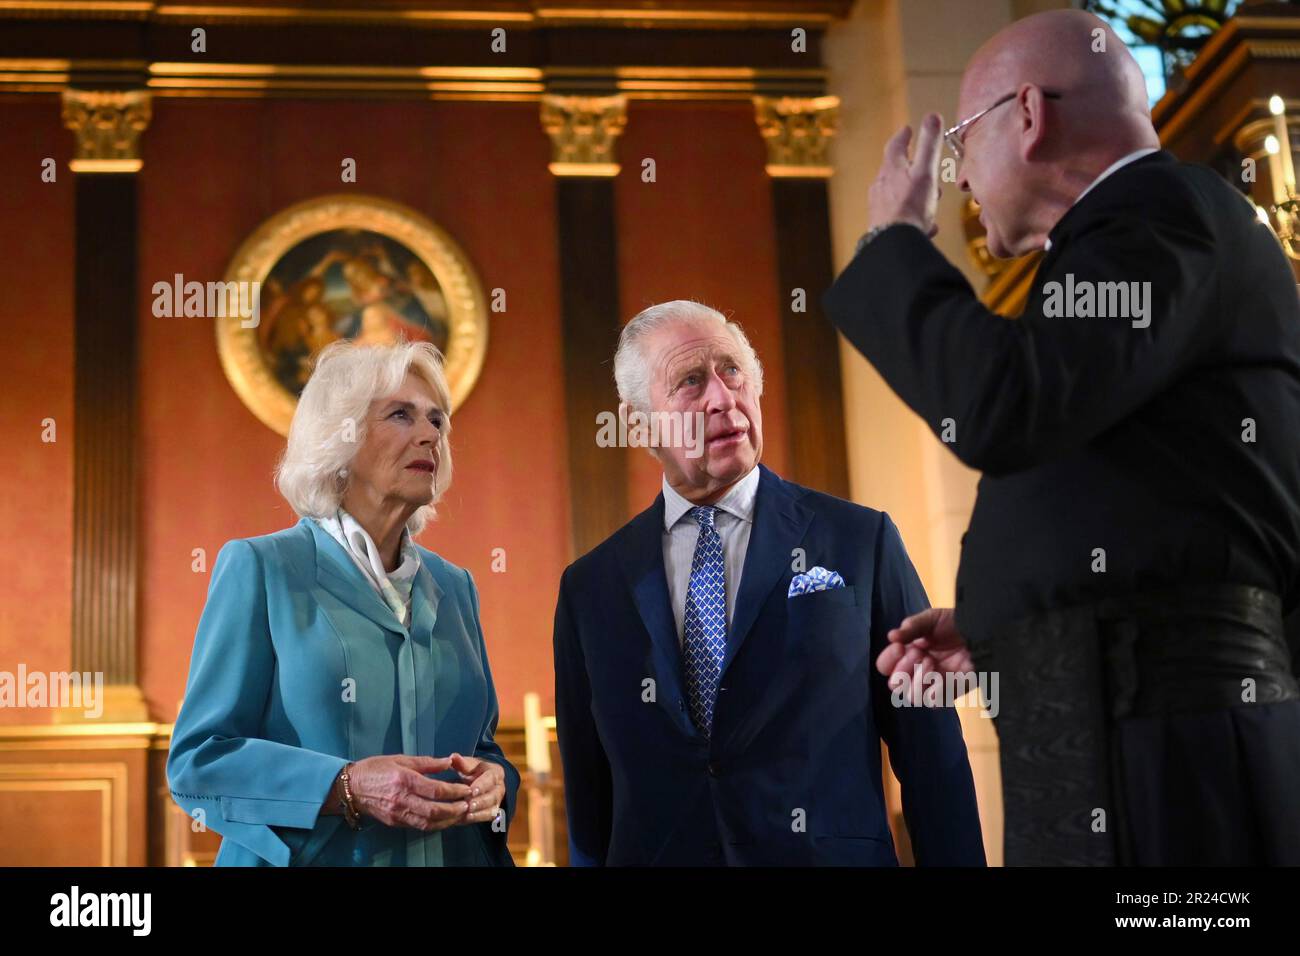 König Karl III. Und Königin Camilla sprechen mit Reverend Simon Grigg in der St. Paul's Church, bekannt als The Actors' Church, um ihren 390. Jahrestag zu feiern, während sie Covent Garden in London besuchen. Bilddatum: Mittwoch, 17. Mai 2023. Stockfoto